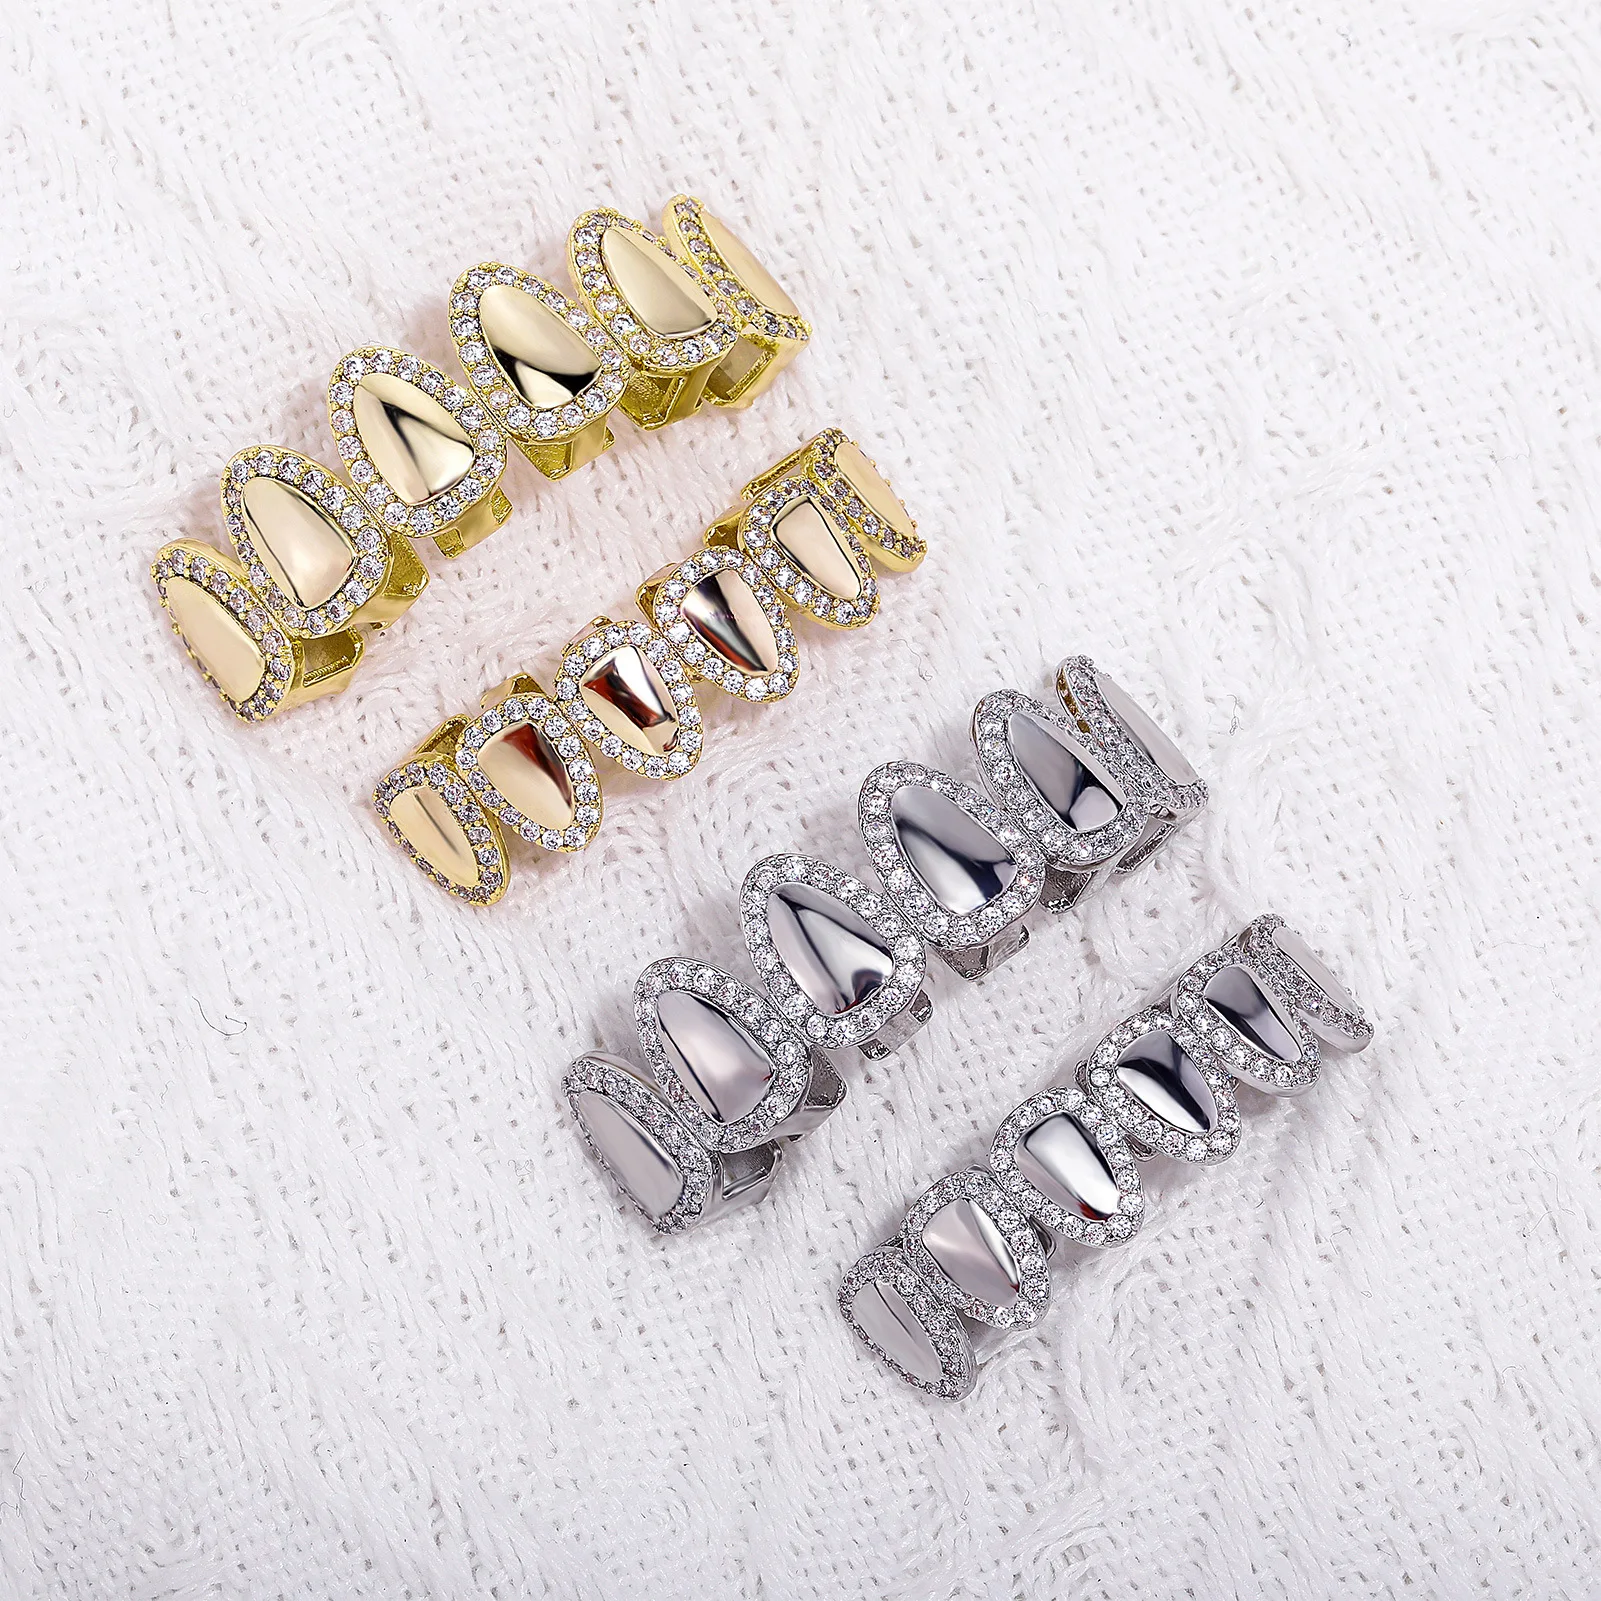 

RACHELZ хип-хоп блестящие циркониевые Зубные коронки в стиле панк 14 к позолоченные колпачки для зубов зубные грили для мужчин и женщин ювелирные изделия Искусственные подарки